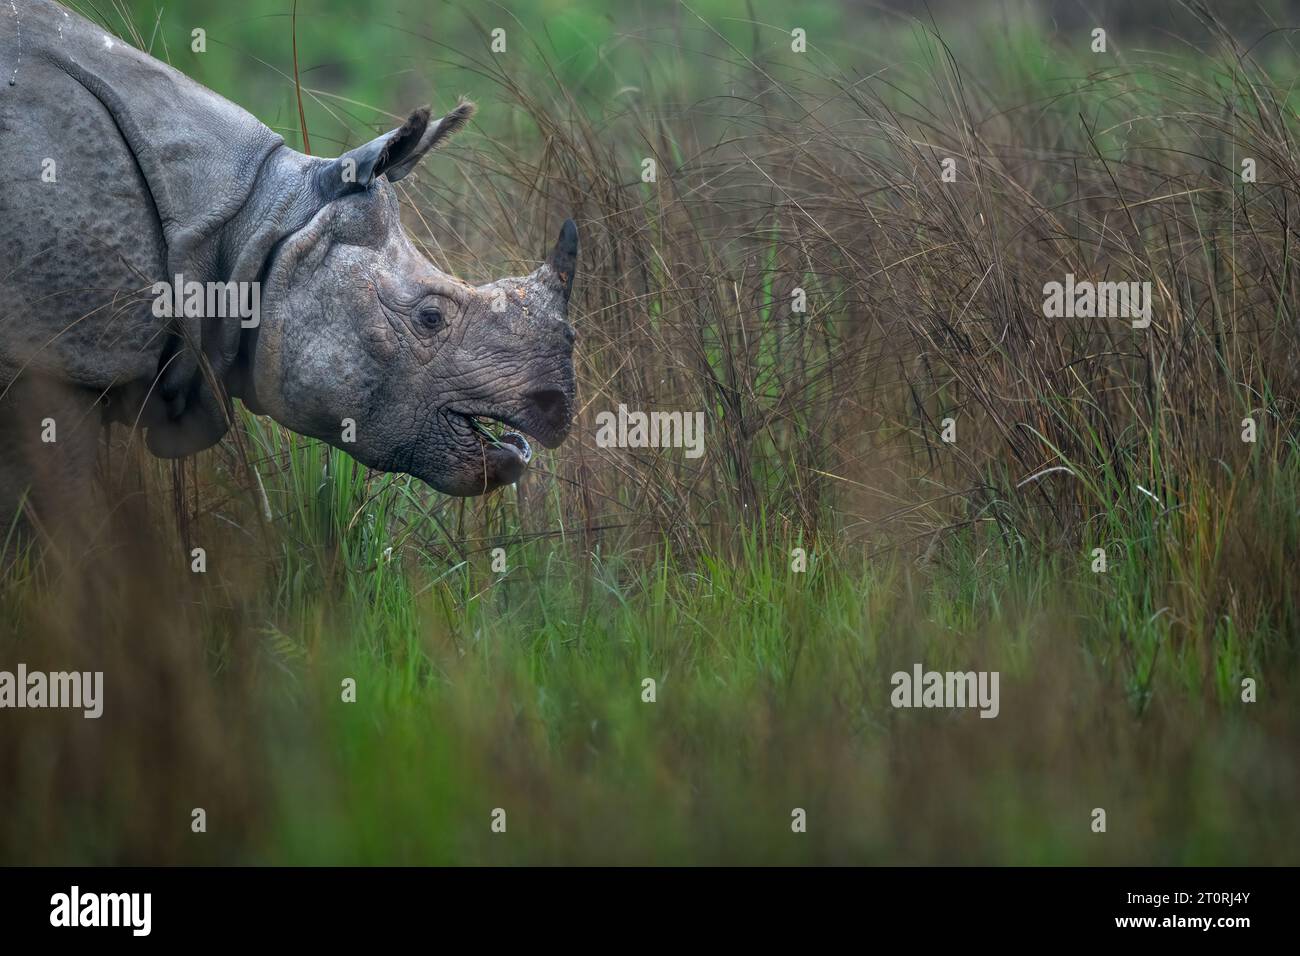 Pâturage de rhinocéros dans les prairies de l'Assam dans le nord-est de l'Inde Banque D'Images